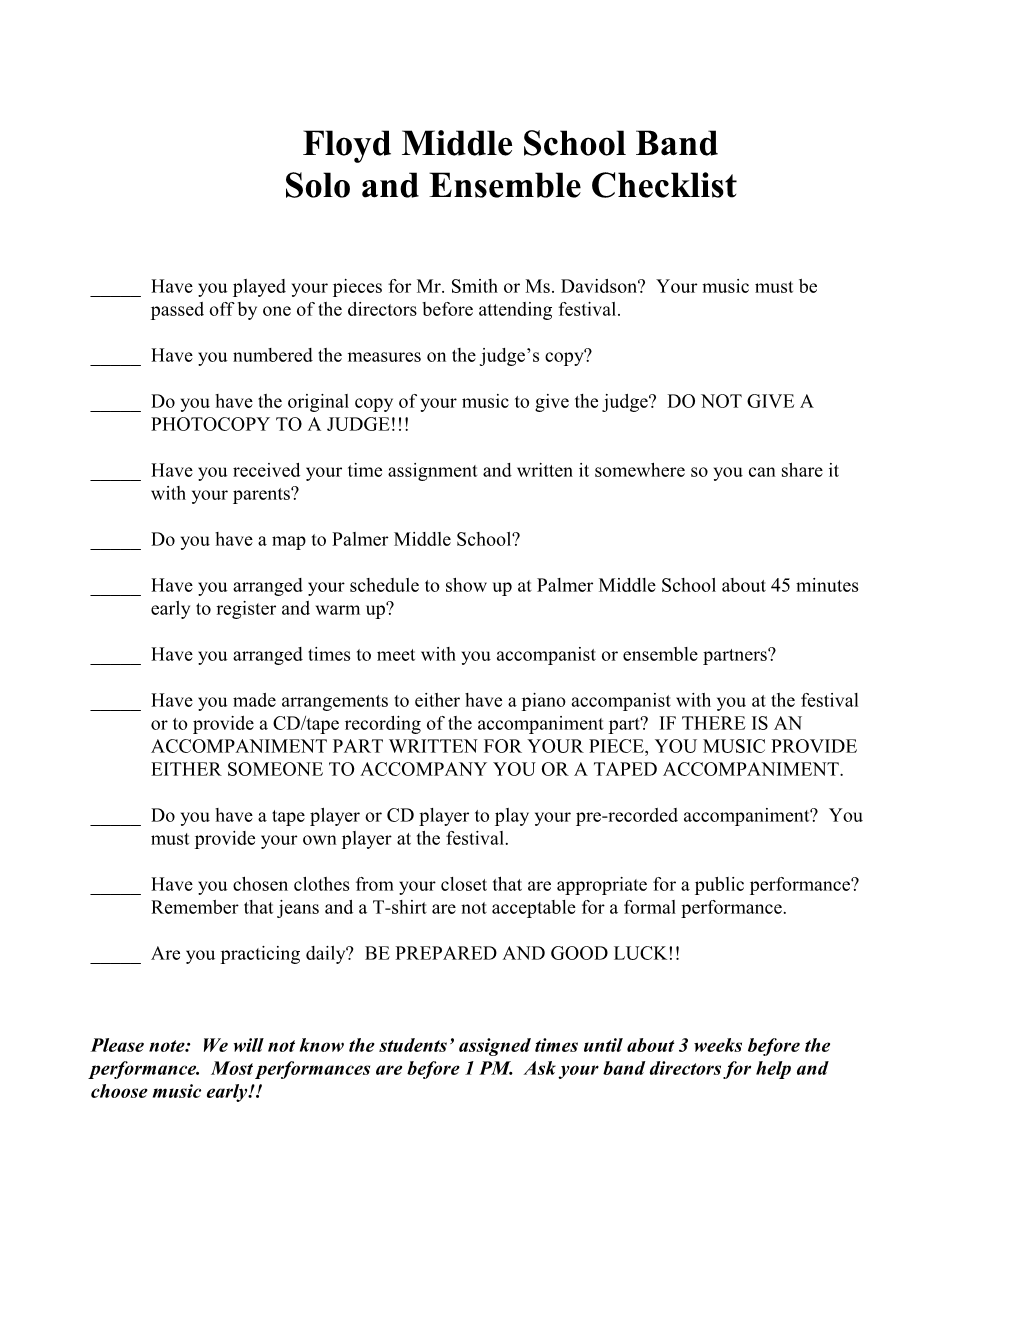 Solo and Ensemble Checklist